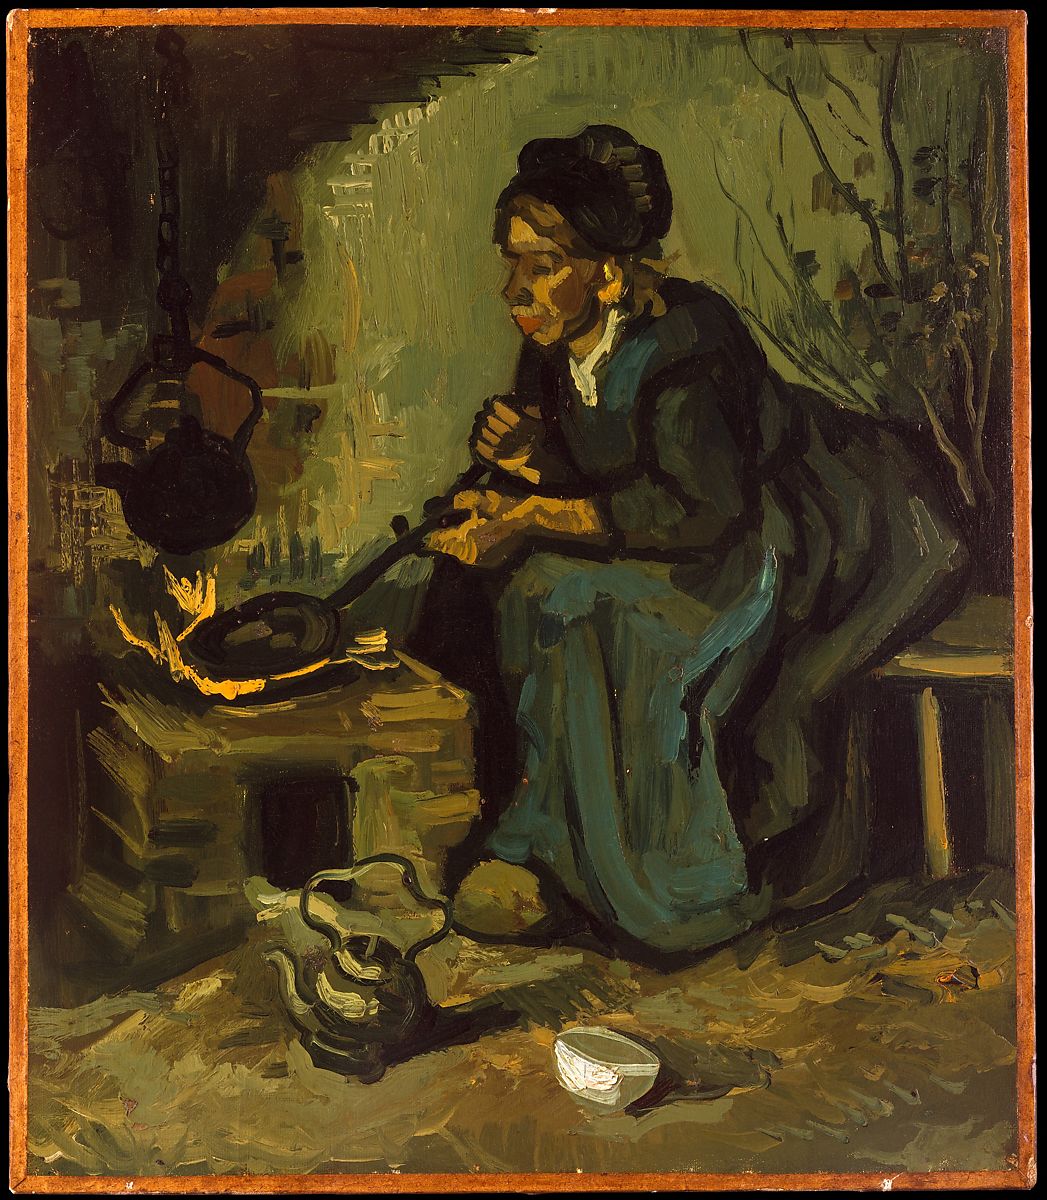 Mulher camponesa cozinhando perto de uma lareira (Vincent Van Gogh) - Reprodução com Qualidade Museu